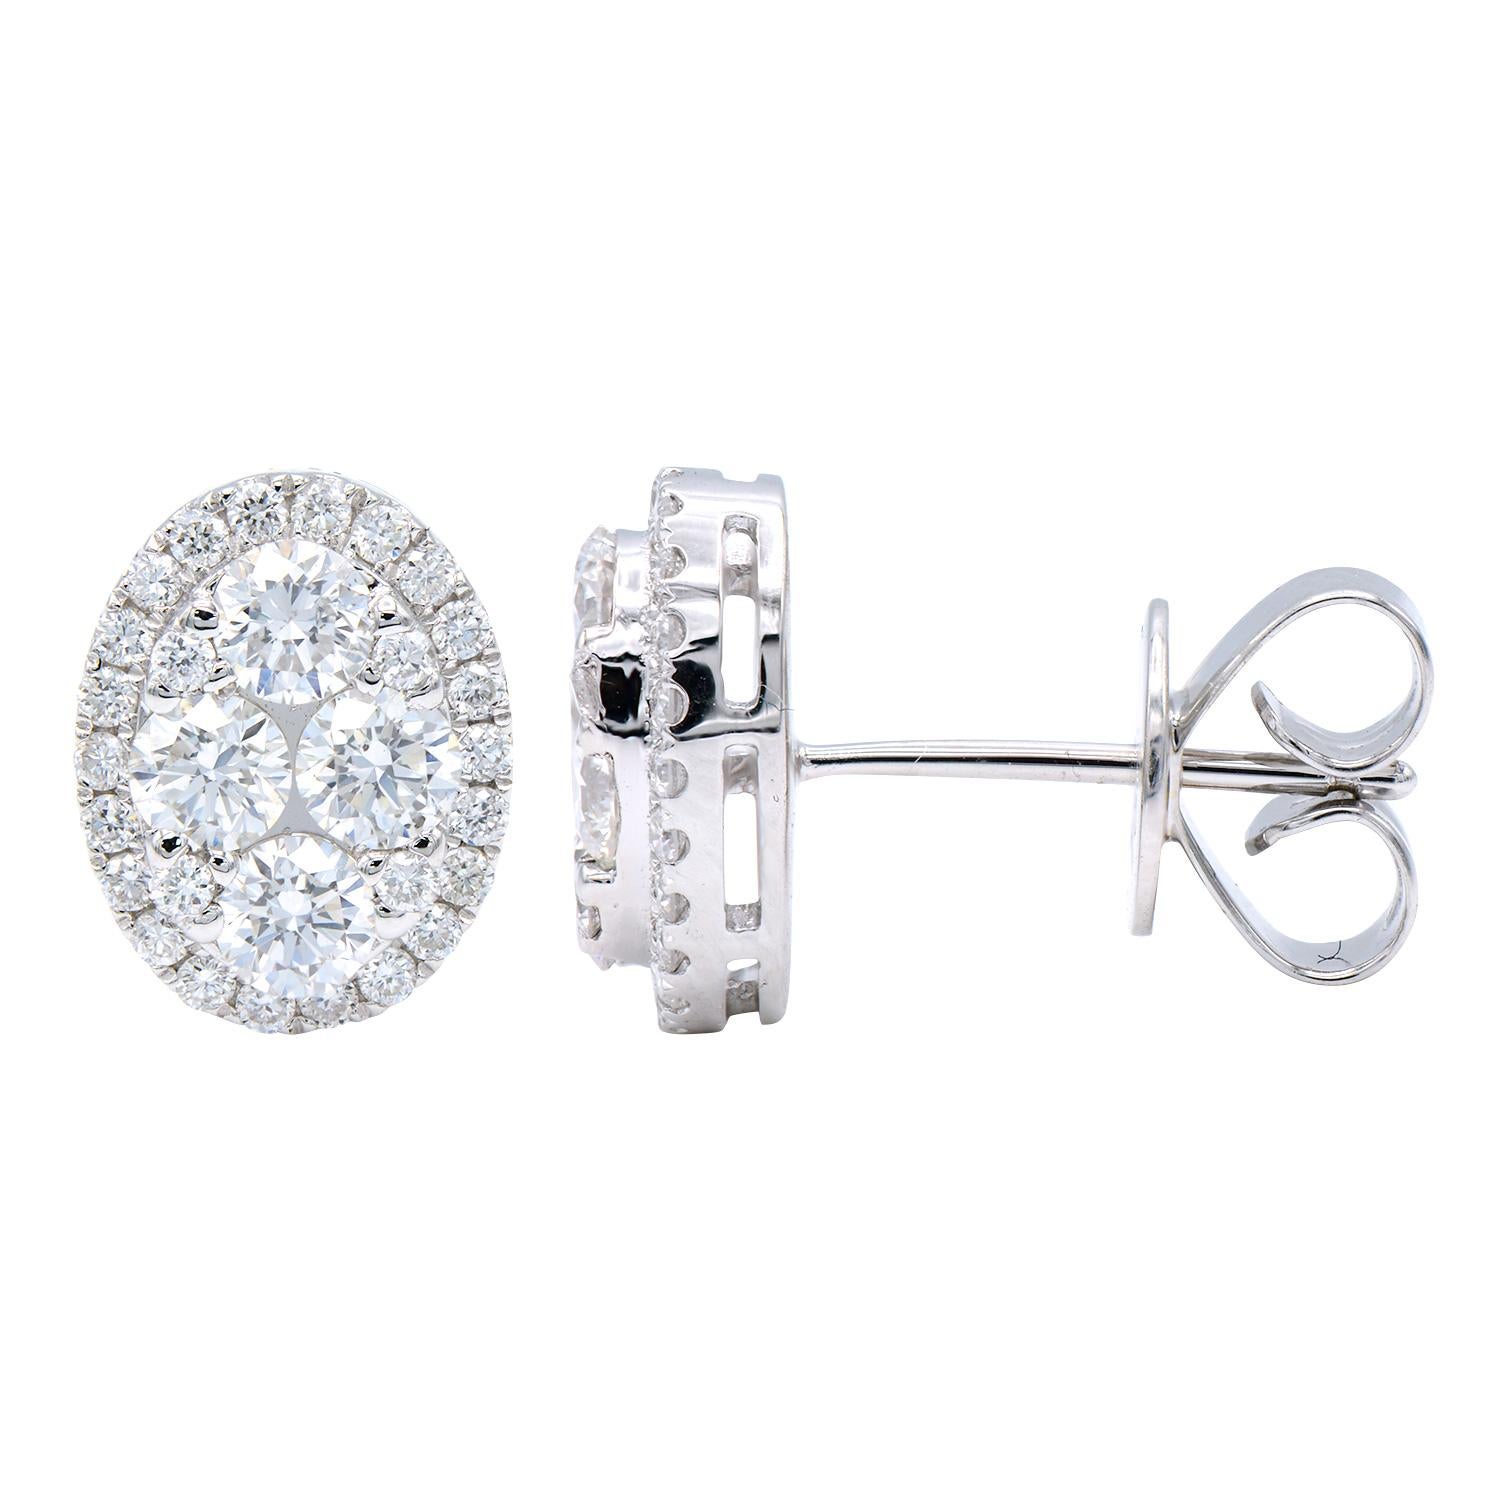 Diese atemberaubenden Diamant-Cluster-Ohrringe sind oval geformt. Das Innere besteht aus 4 größeren Diamanten und 4 kleineren Diamanten, die alle von einem Diamant-Halo umgeben sind. Insgesamt gibt es 60 runde Diamanten von VS2, Farbe G mit einem